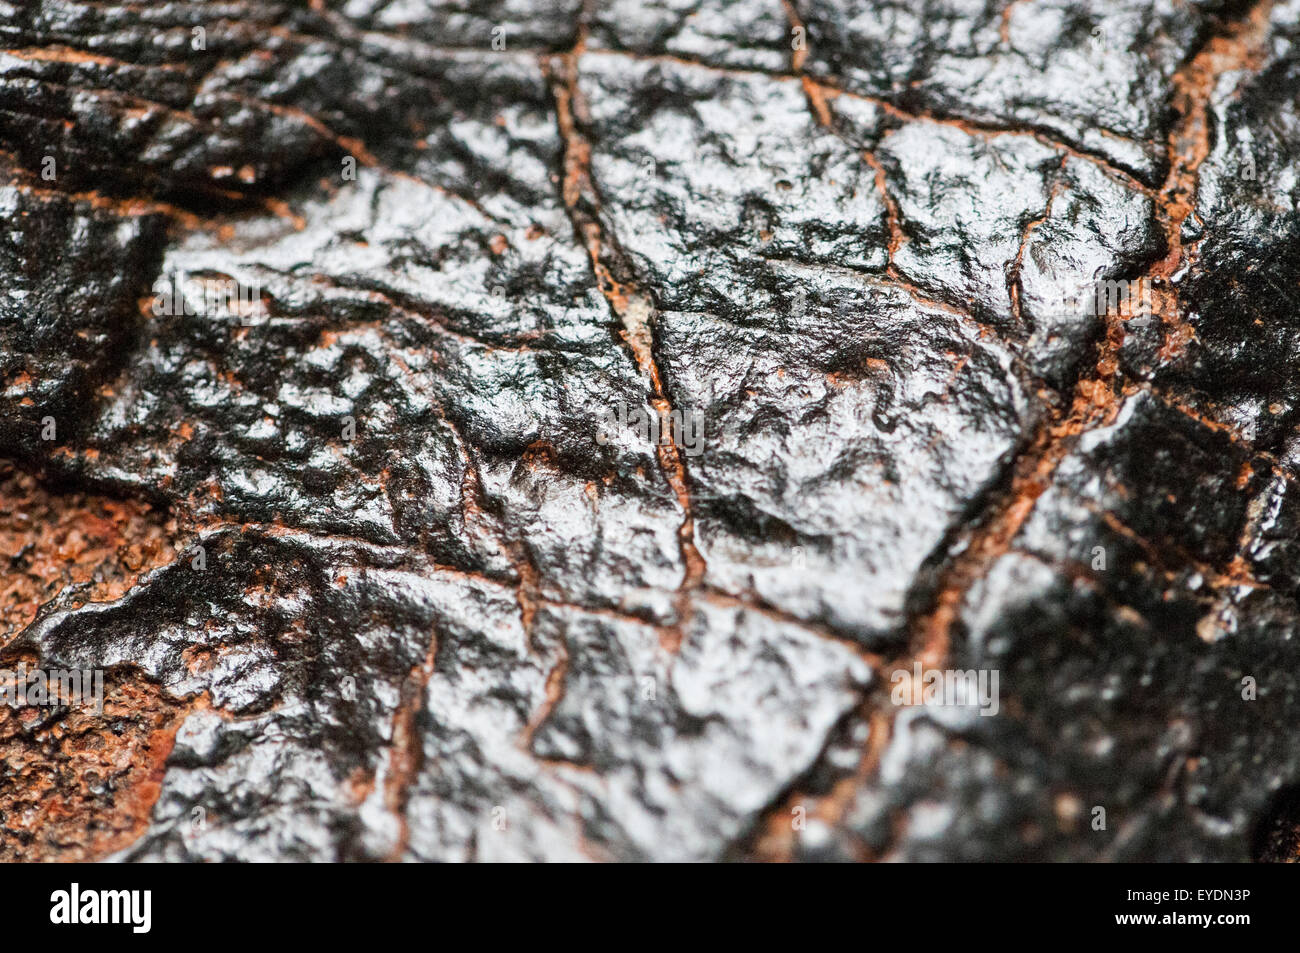 Makroaufnahme von versteinerten Softshell Schildkröte Scute aus Miozän Epoche. Stockfoto